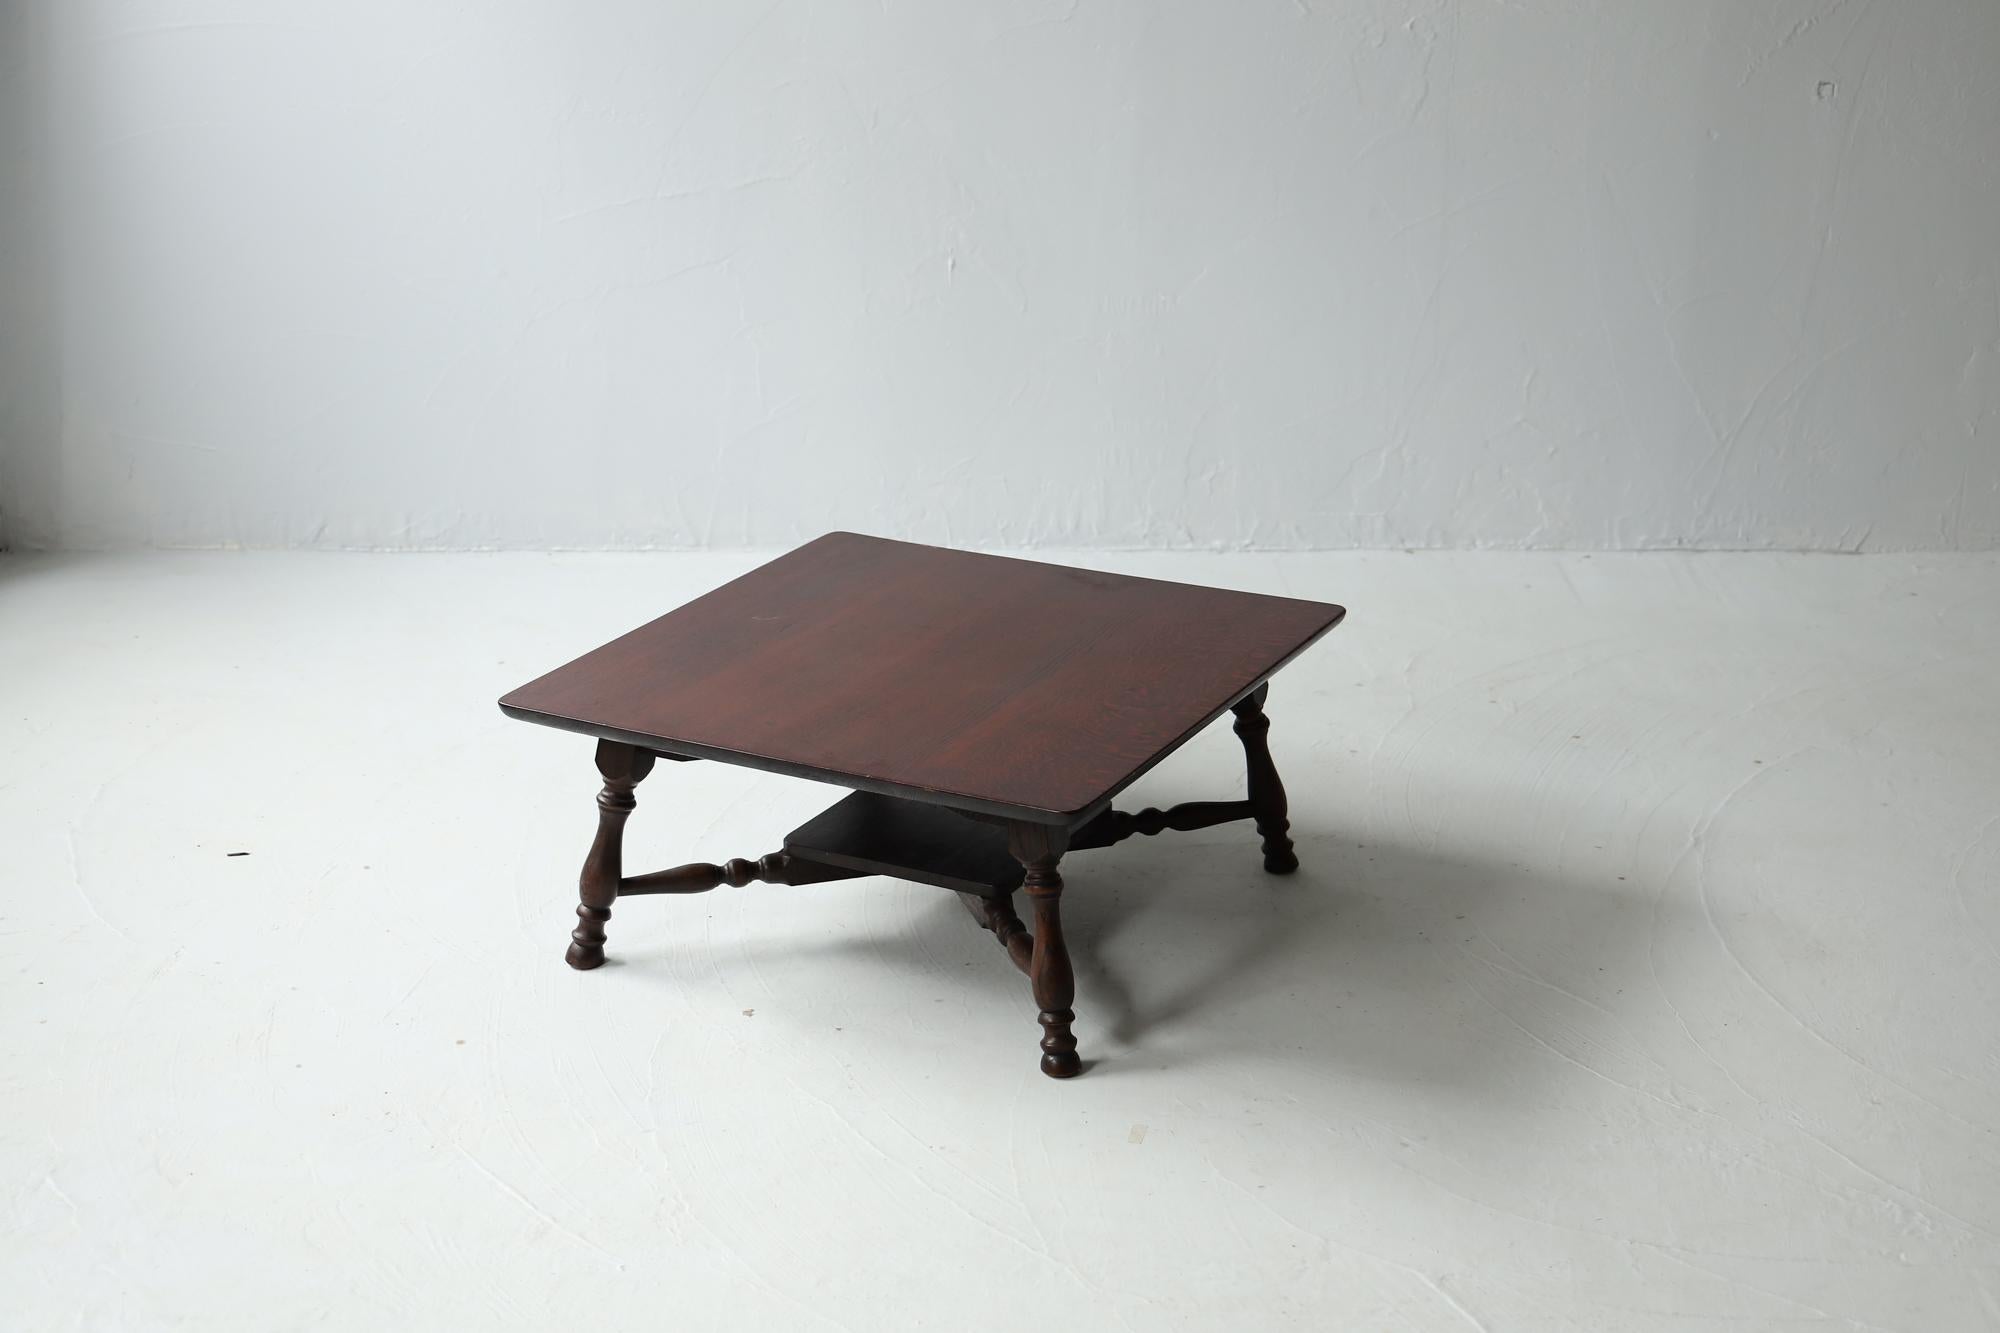 Dies ist ein antiker japanischer Couchtisch aus der Taisho-Periode.

Diese Möbel wurden unter Anwendung traditioneller Techniken hergestellt, die in japanischen Schreinen verwendet werden.

Das MATERIAL ist hochwertiges Eichenholz. Die Maserung des